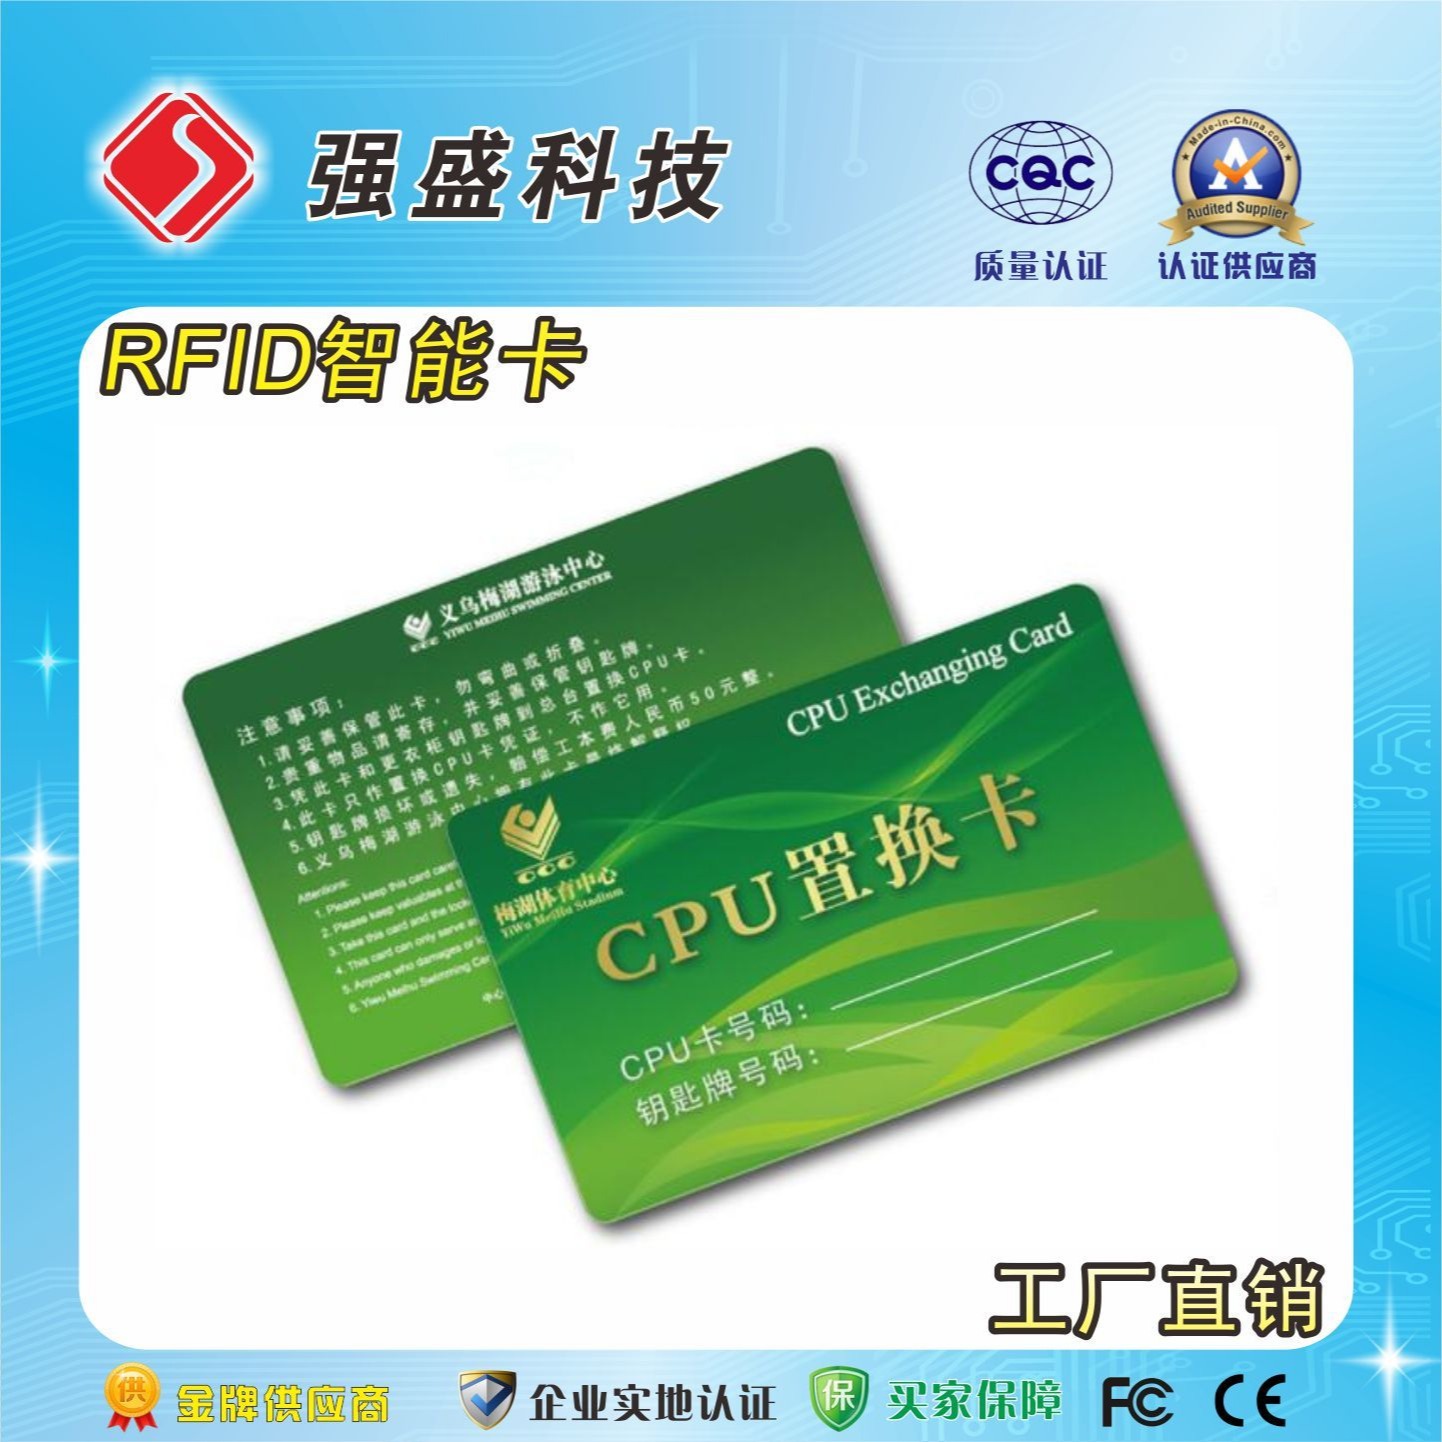 供应国密CPU卡 FM1216-137芯片 校园一卡通 CPU双界面卡图片